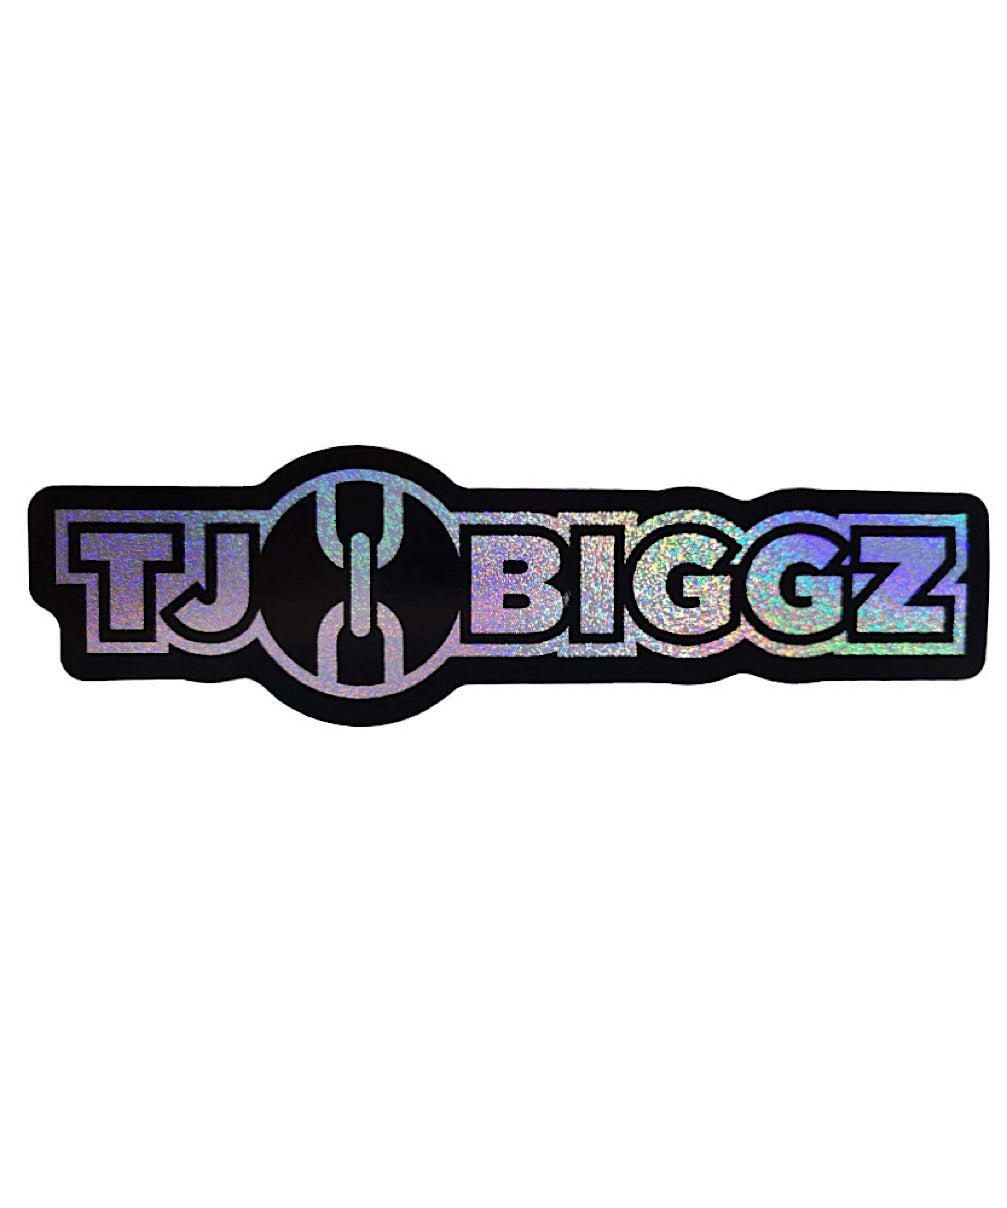 _Gift_Tj Biggz Holographic Sticker